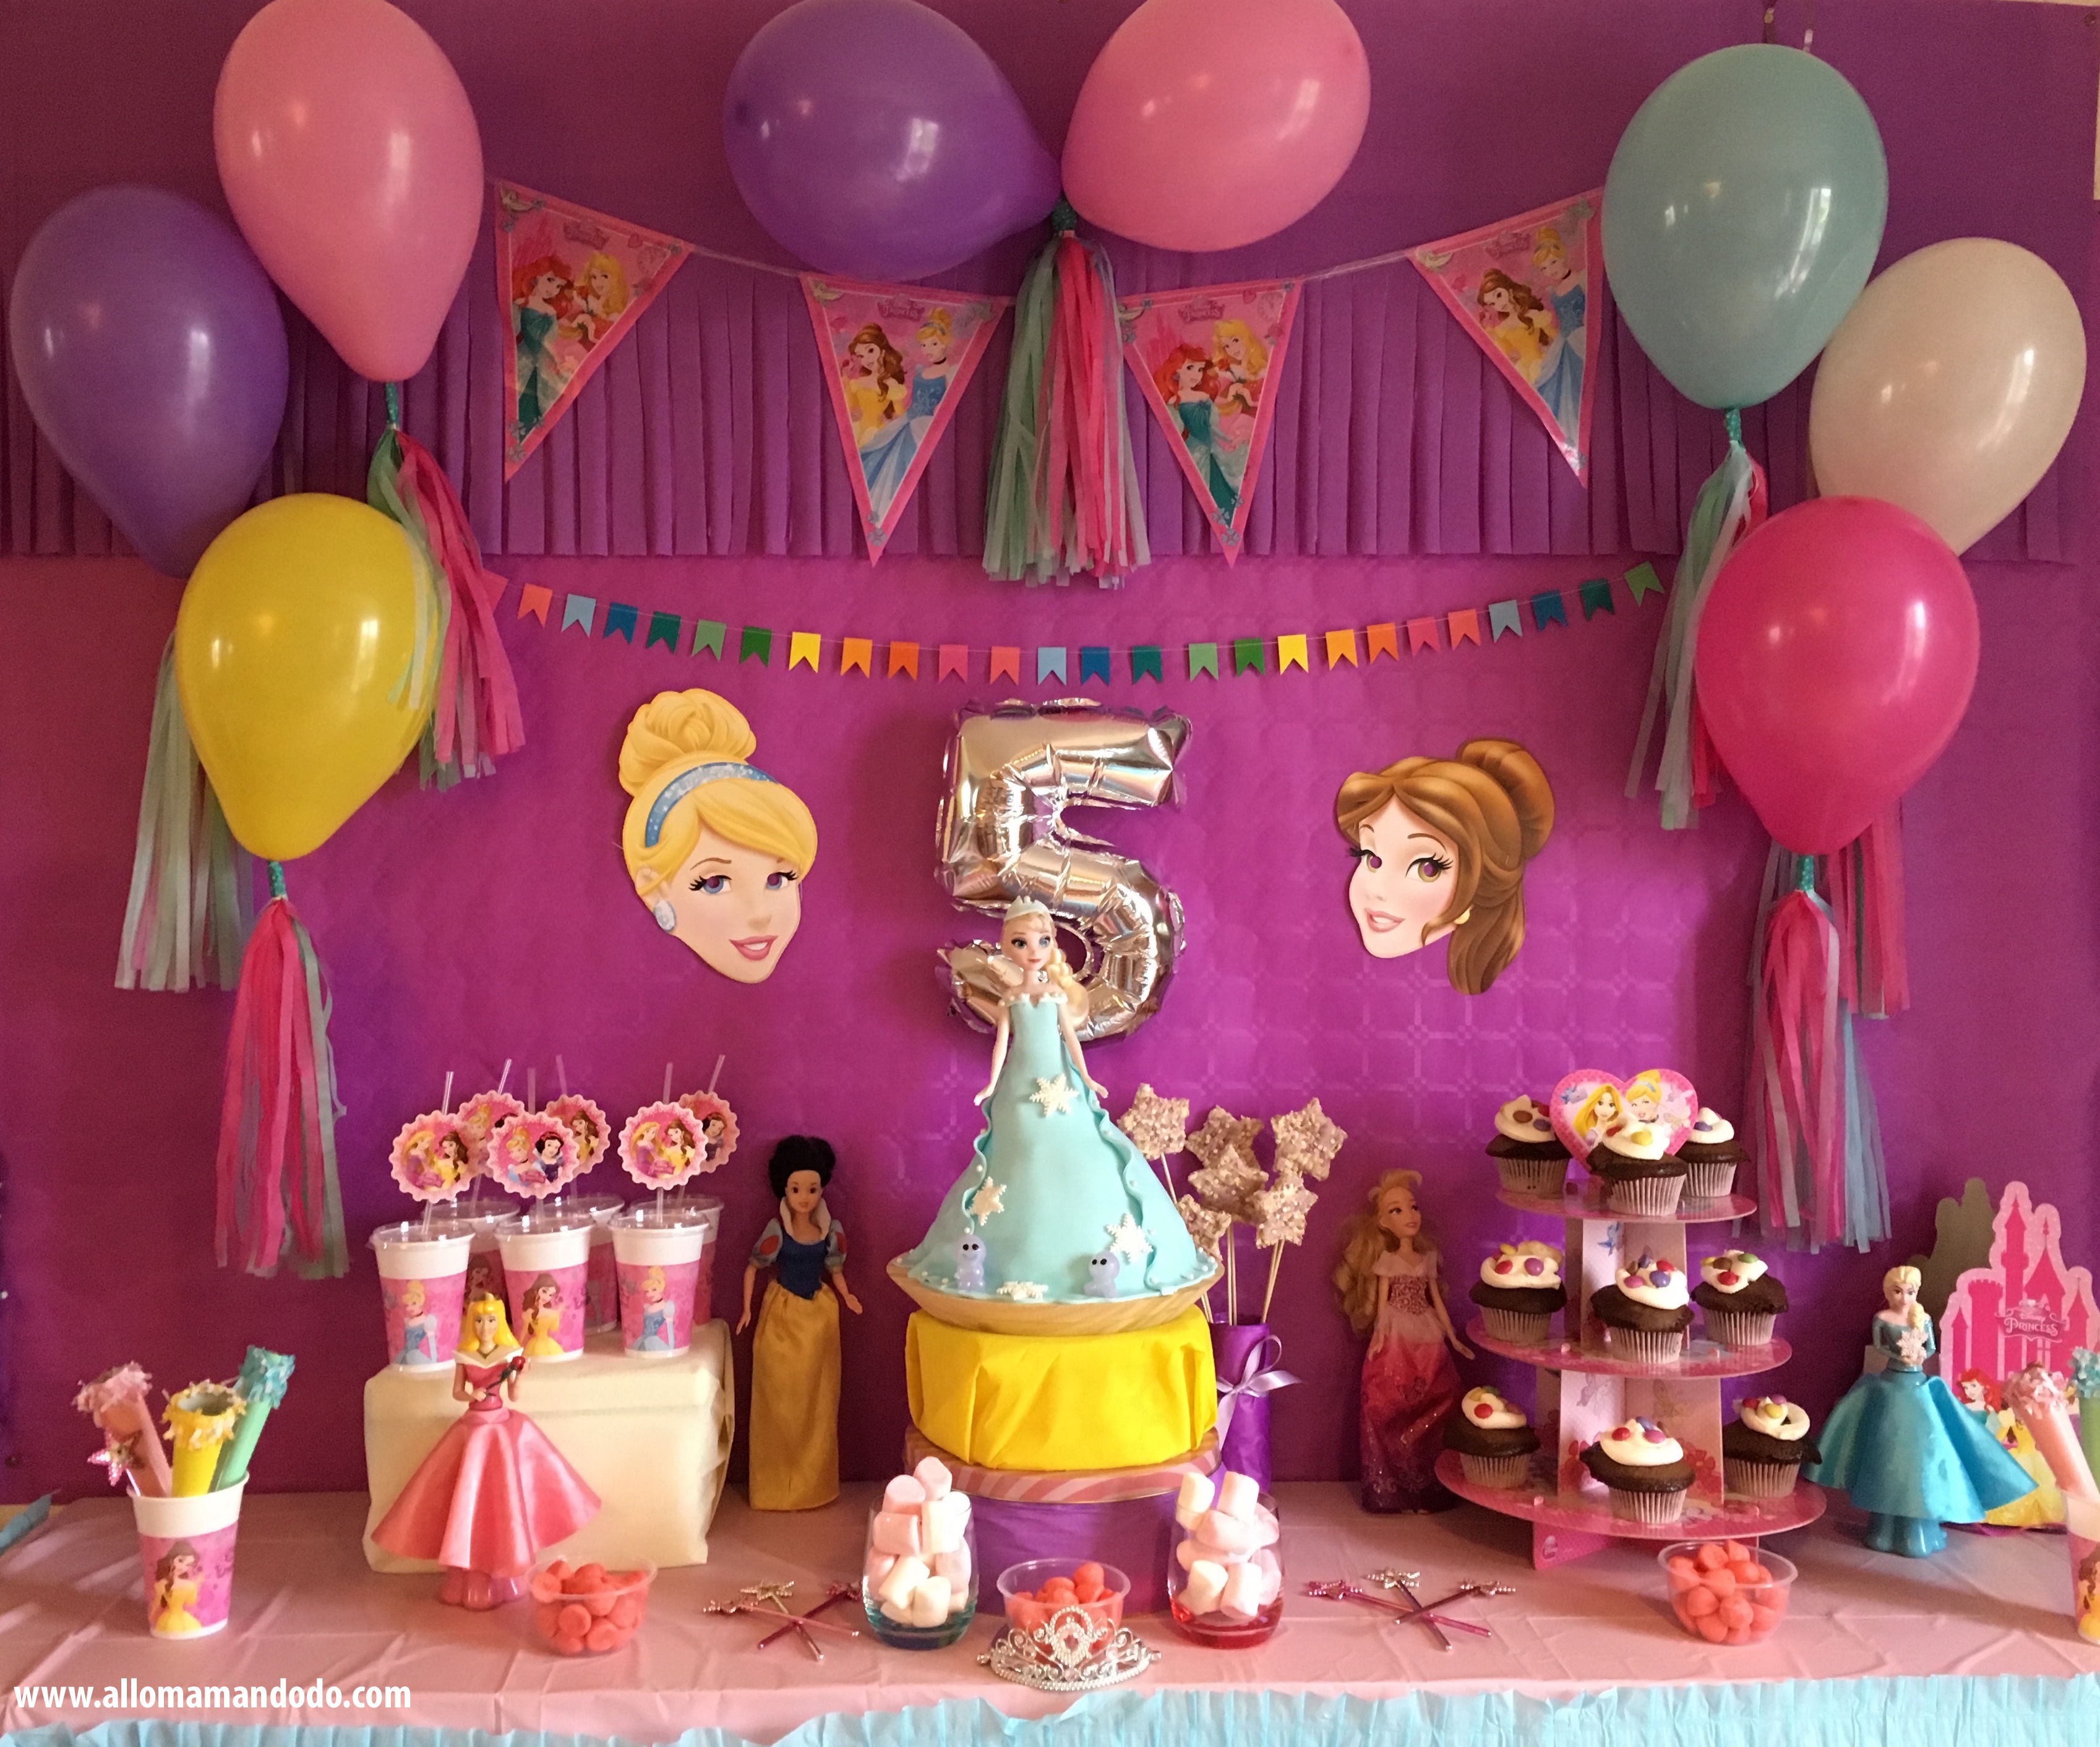 Décoration de fête d'anniversaire princesse Disney, ballons